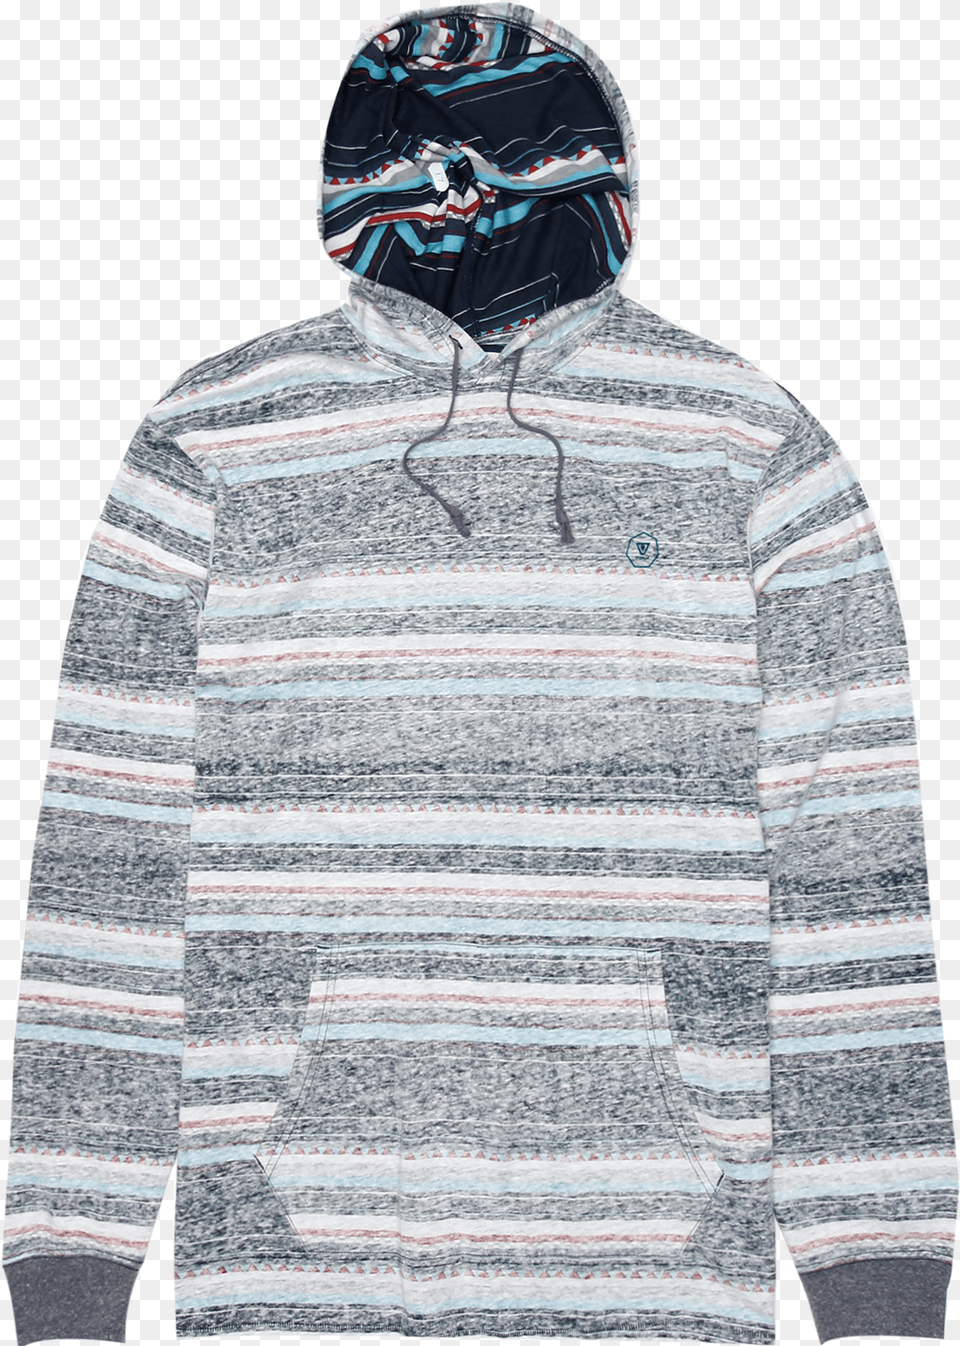 Shockwave Po Hoodie, Sweatshirt, Sweater, Knitwear, Hood Png